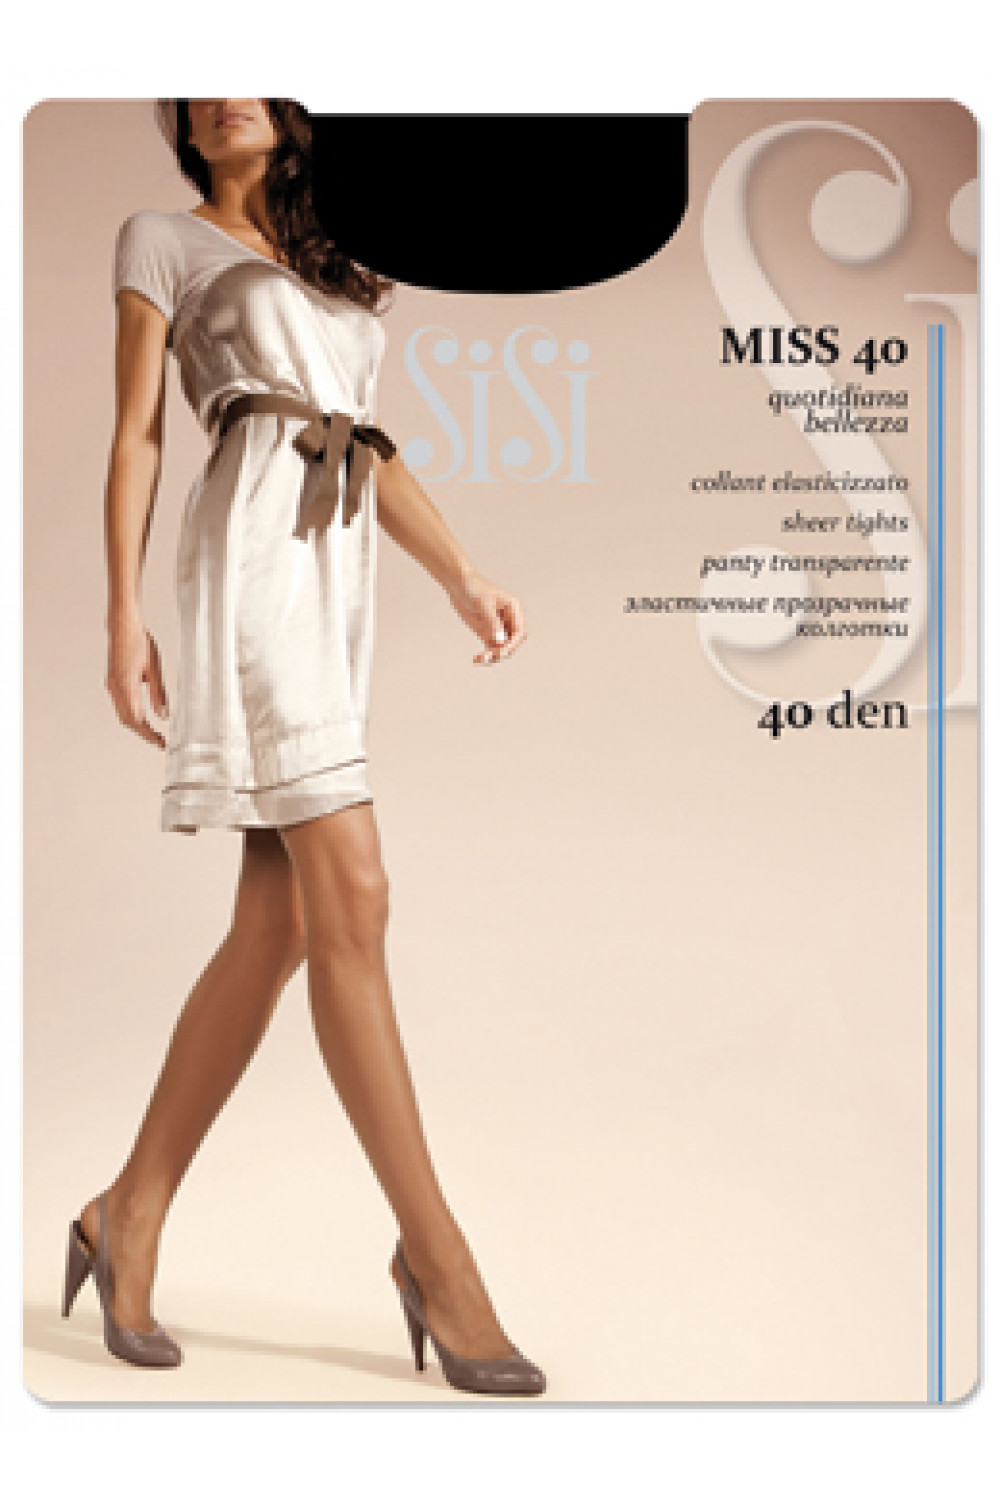 Классические тонкие прозрачные колготки Miss 40 (100/10)*** Sisi